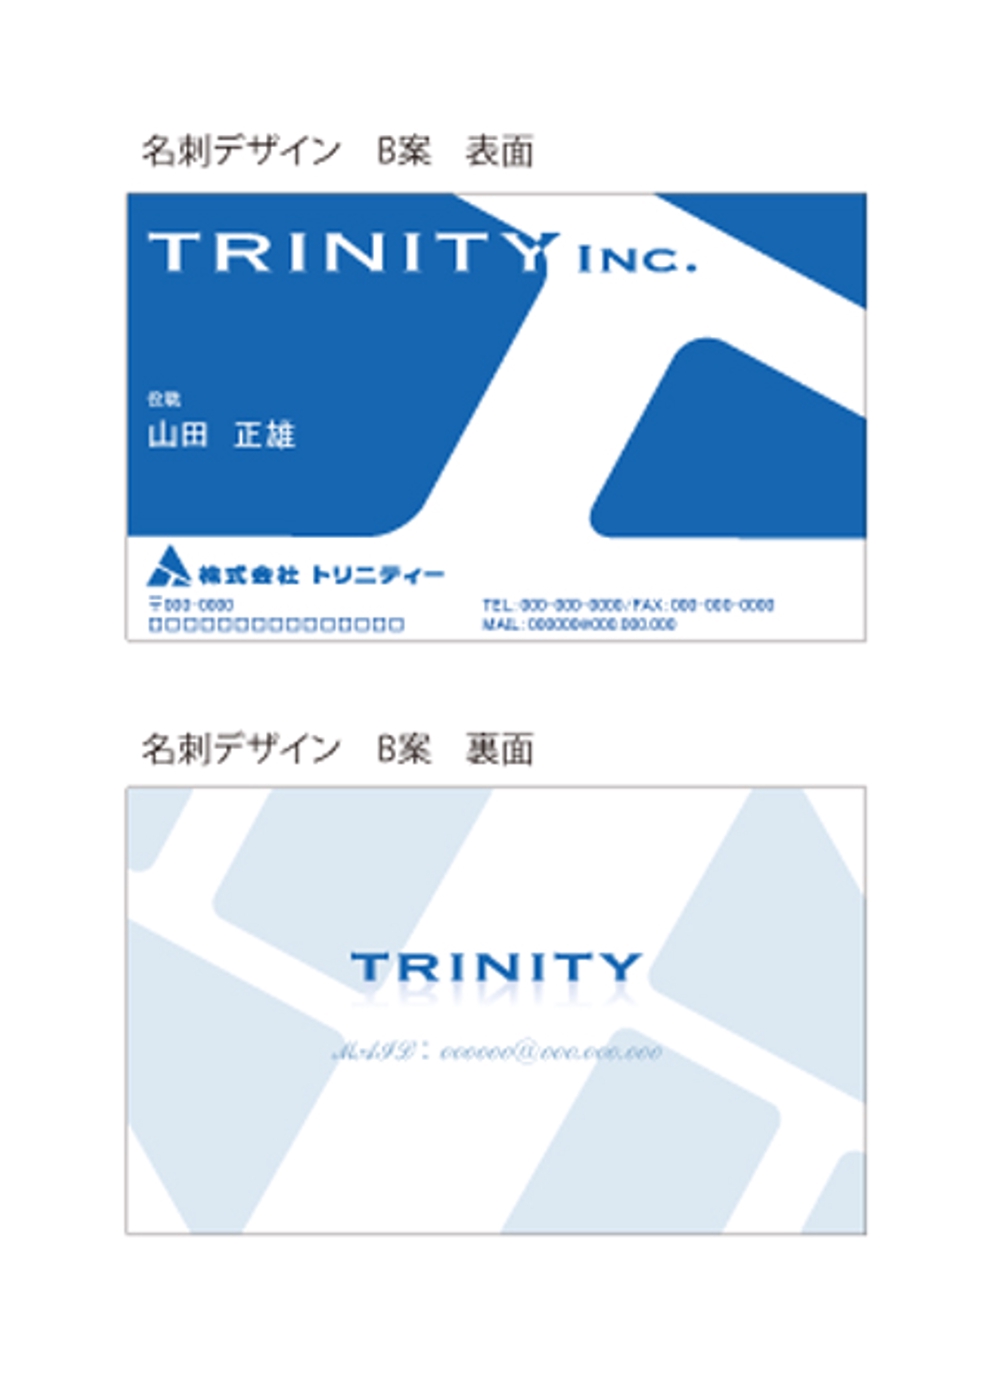 トリニティー社の名刺デザインとカラーコーディネーション